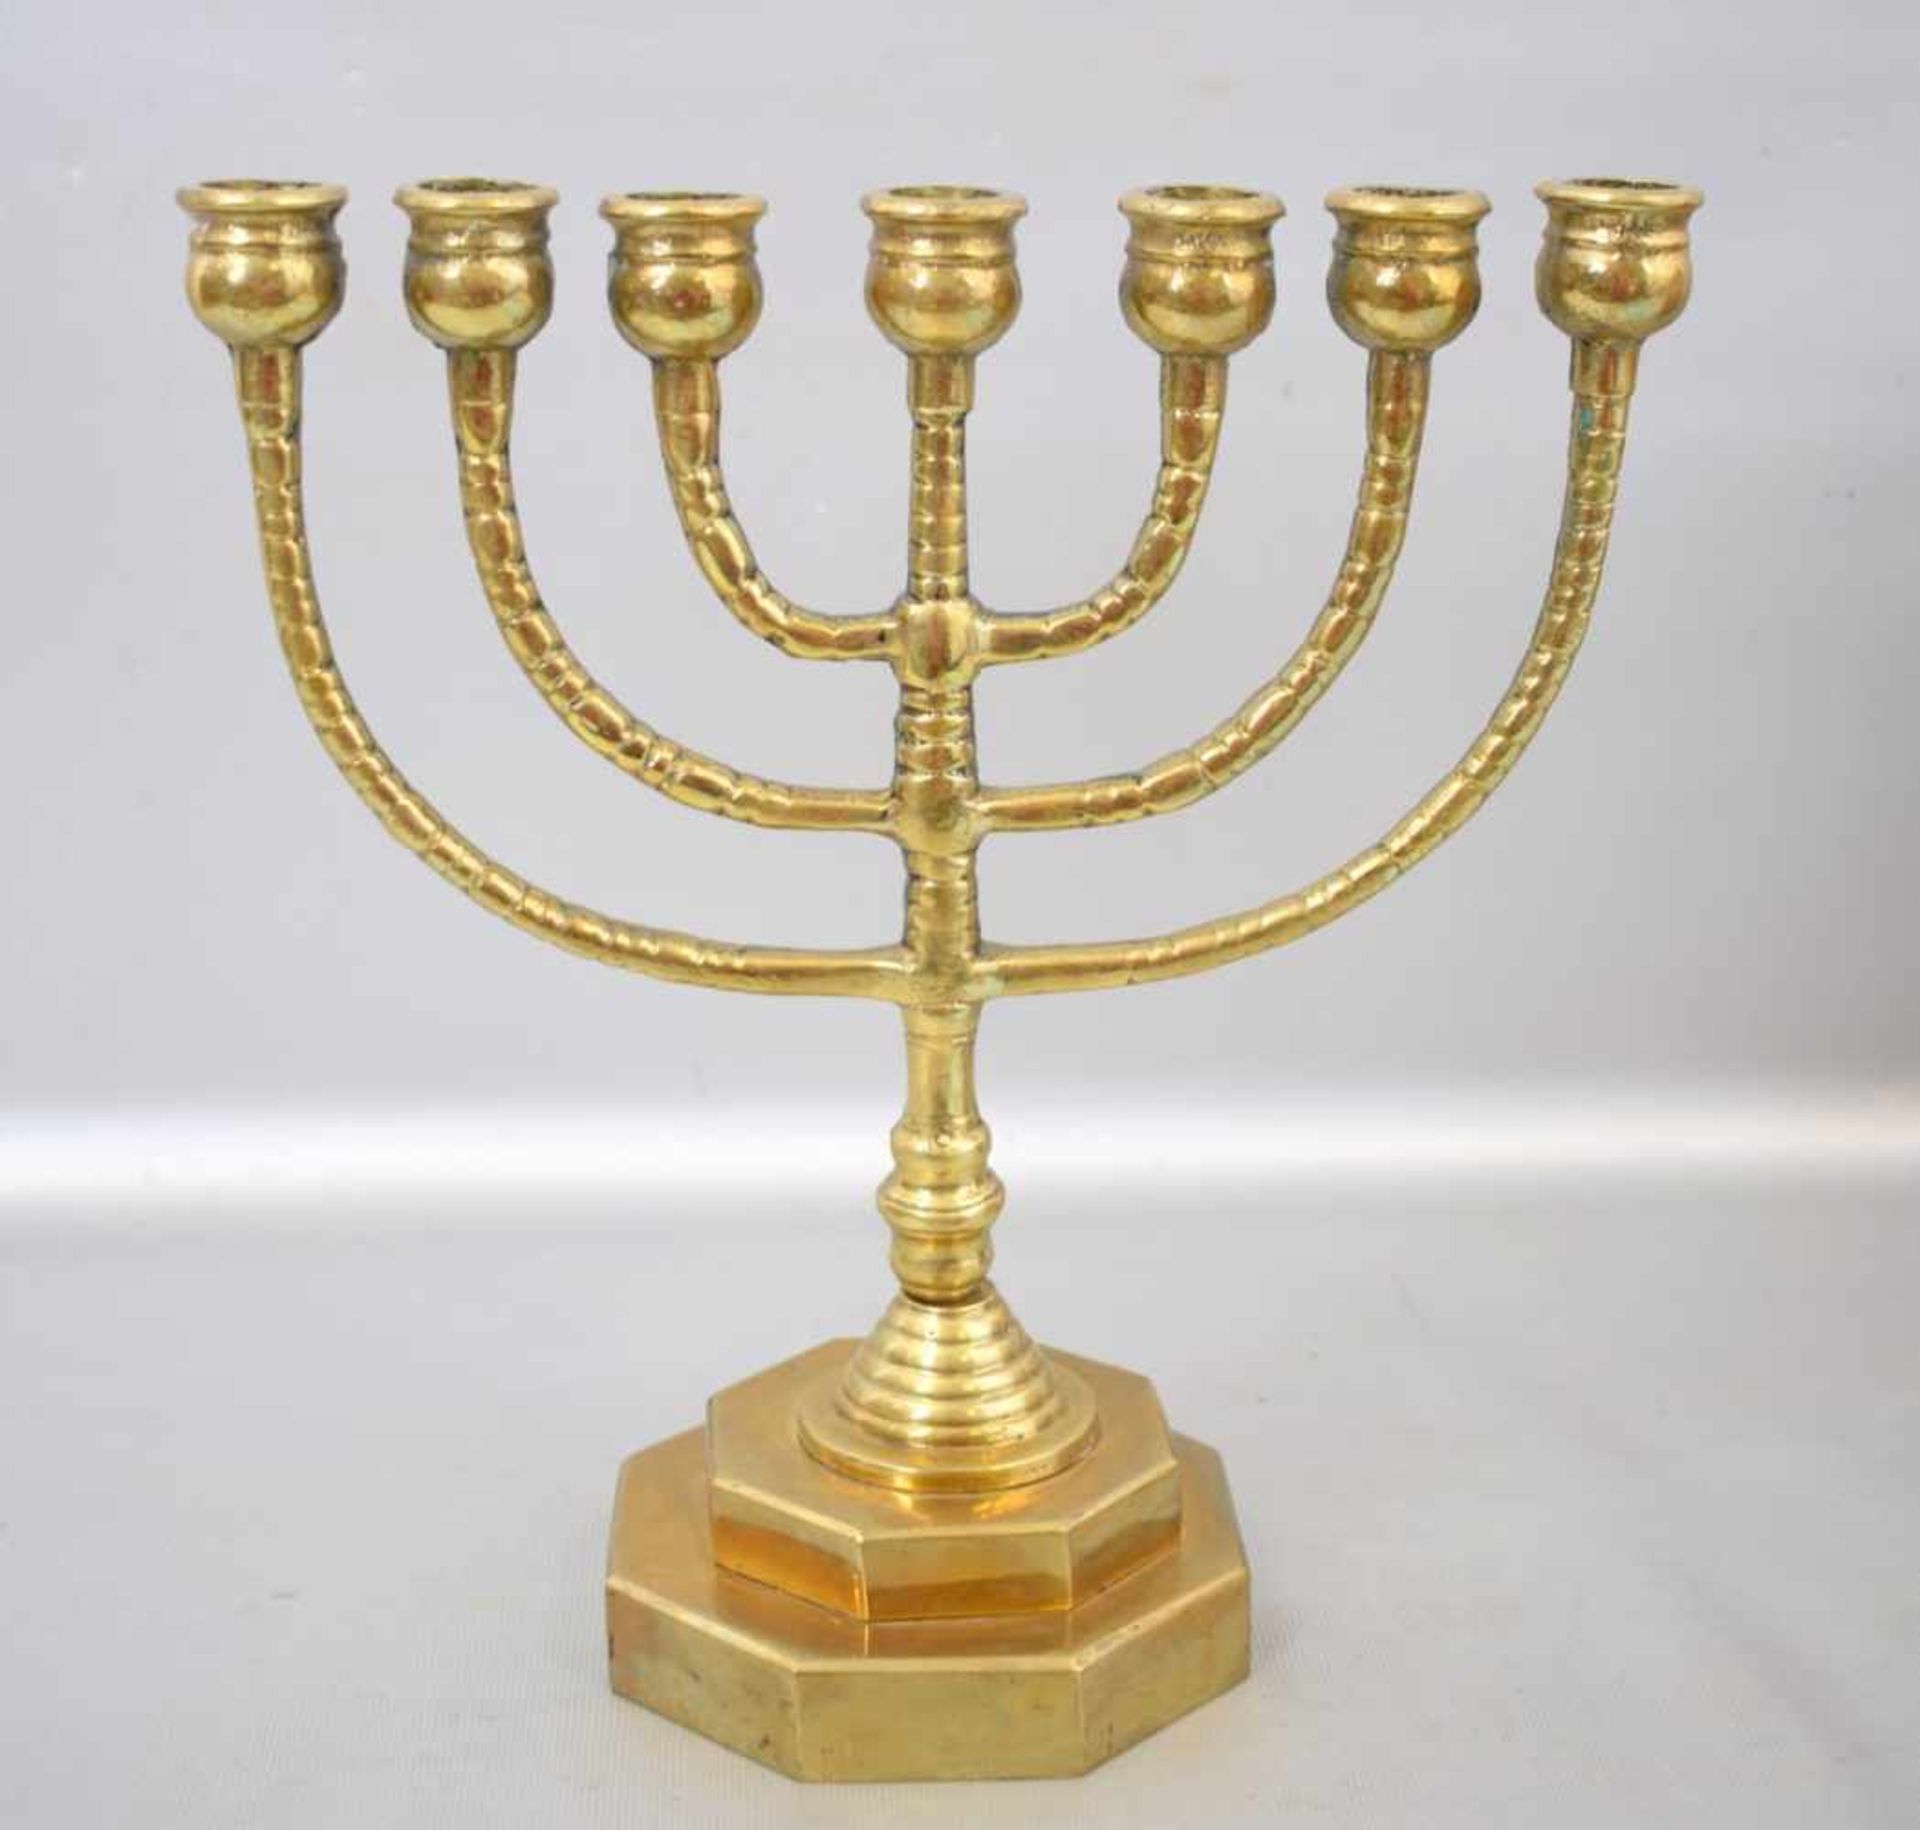 Jüdischer Kerzenleuchter7-lichtig, Messing, achteckiger Fuß, runder Schaft, H 26 cm, B 24 cm